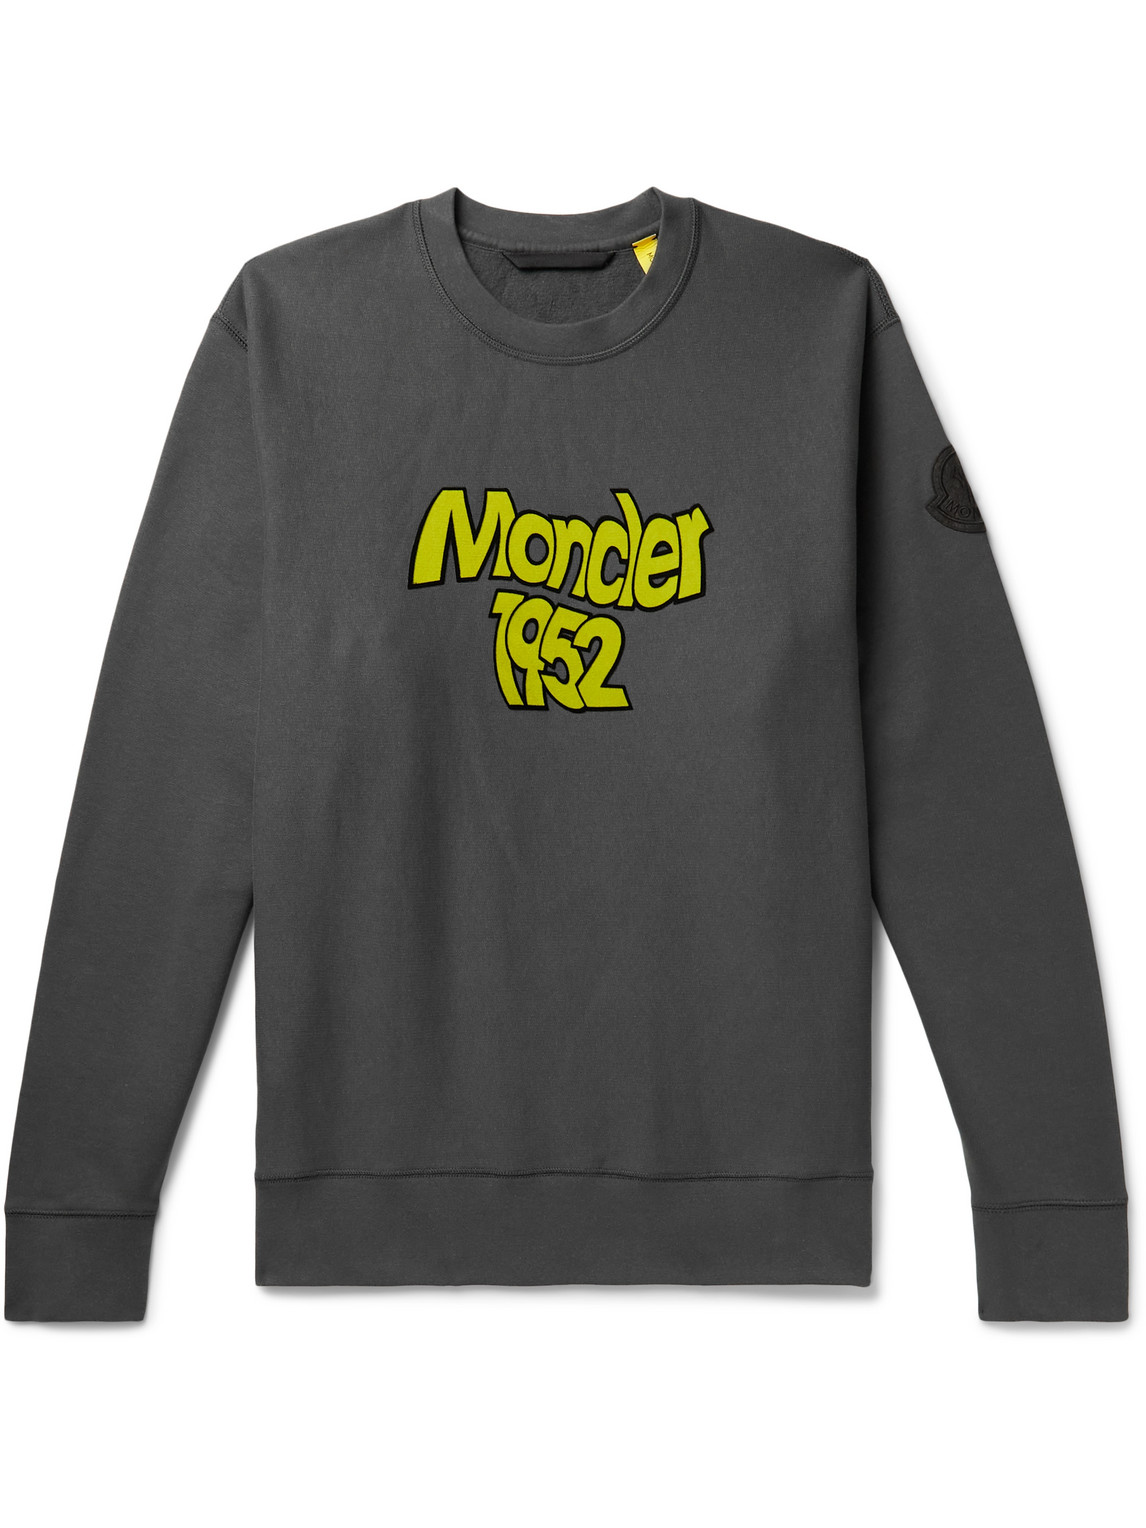 Moncler Genius 2 Moncler 1952 Logo-flocked Cotton-jersey Sweatshirt In Grey